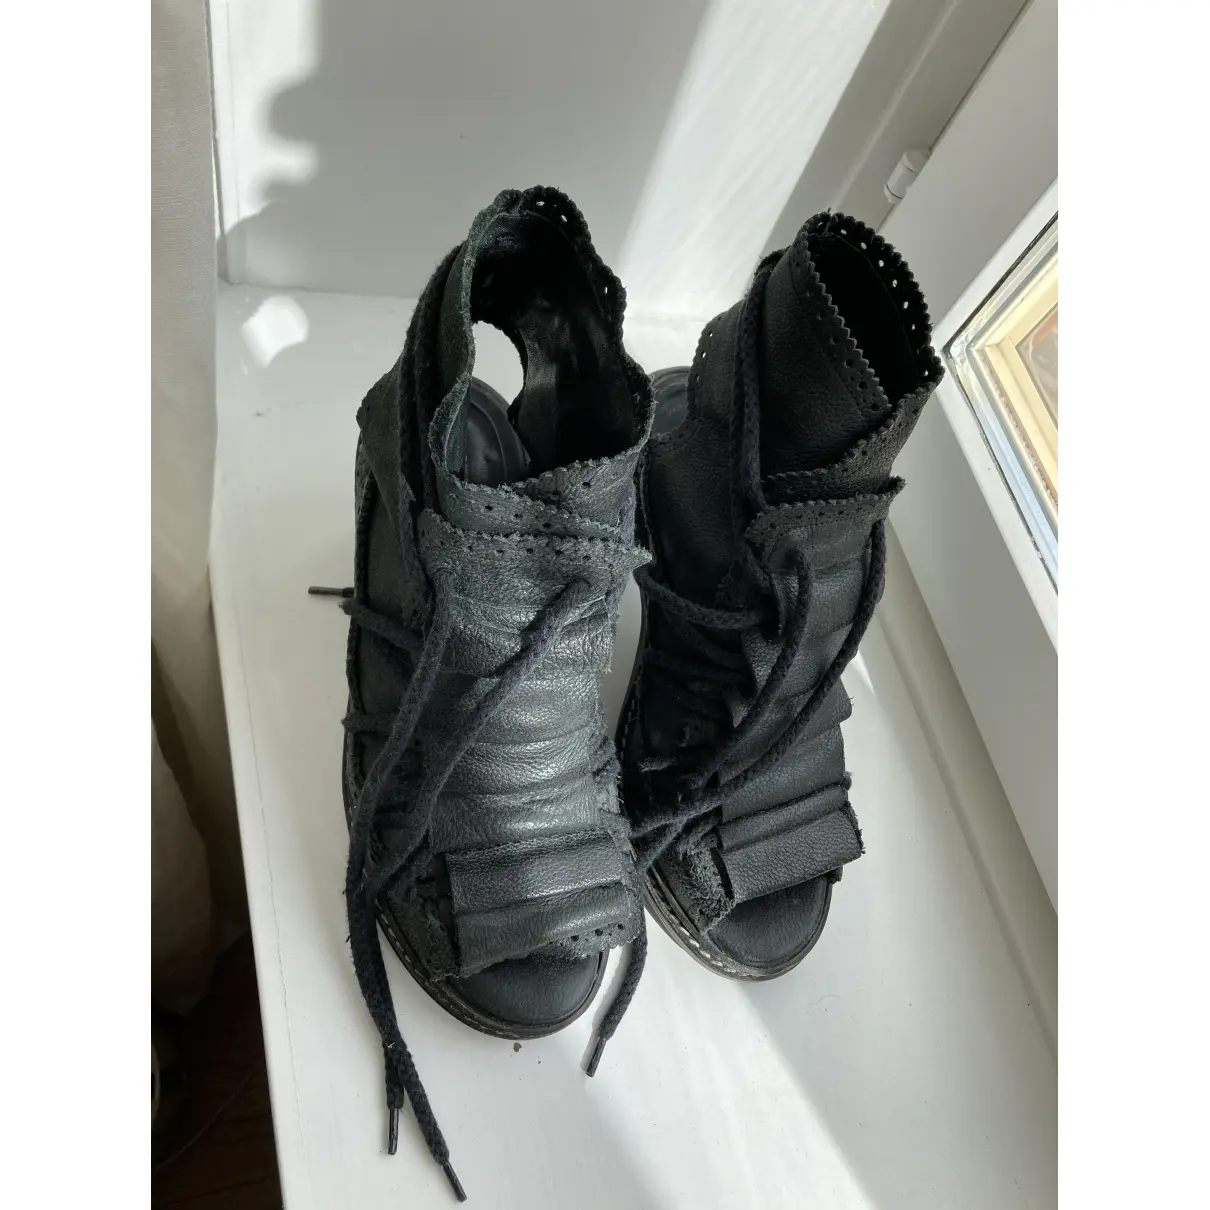 Buy Henrik Vibskov Leather ankle boots online